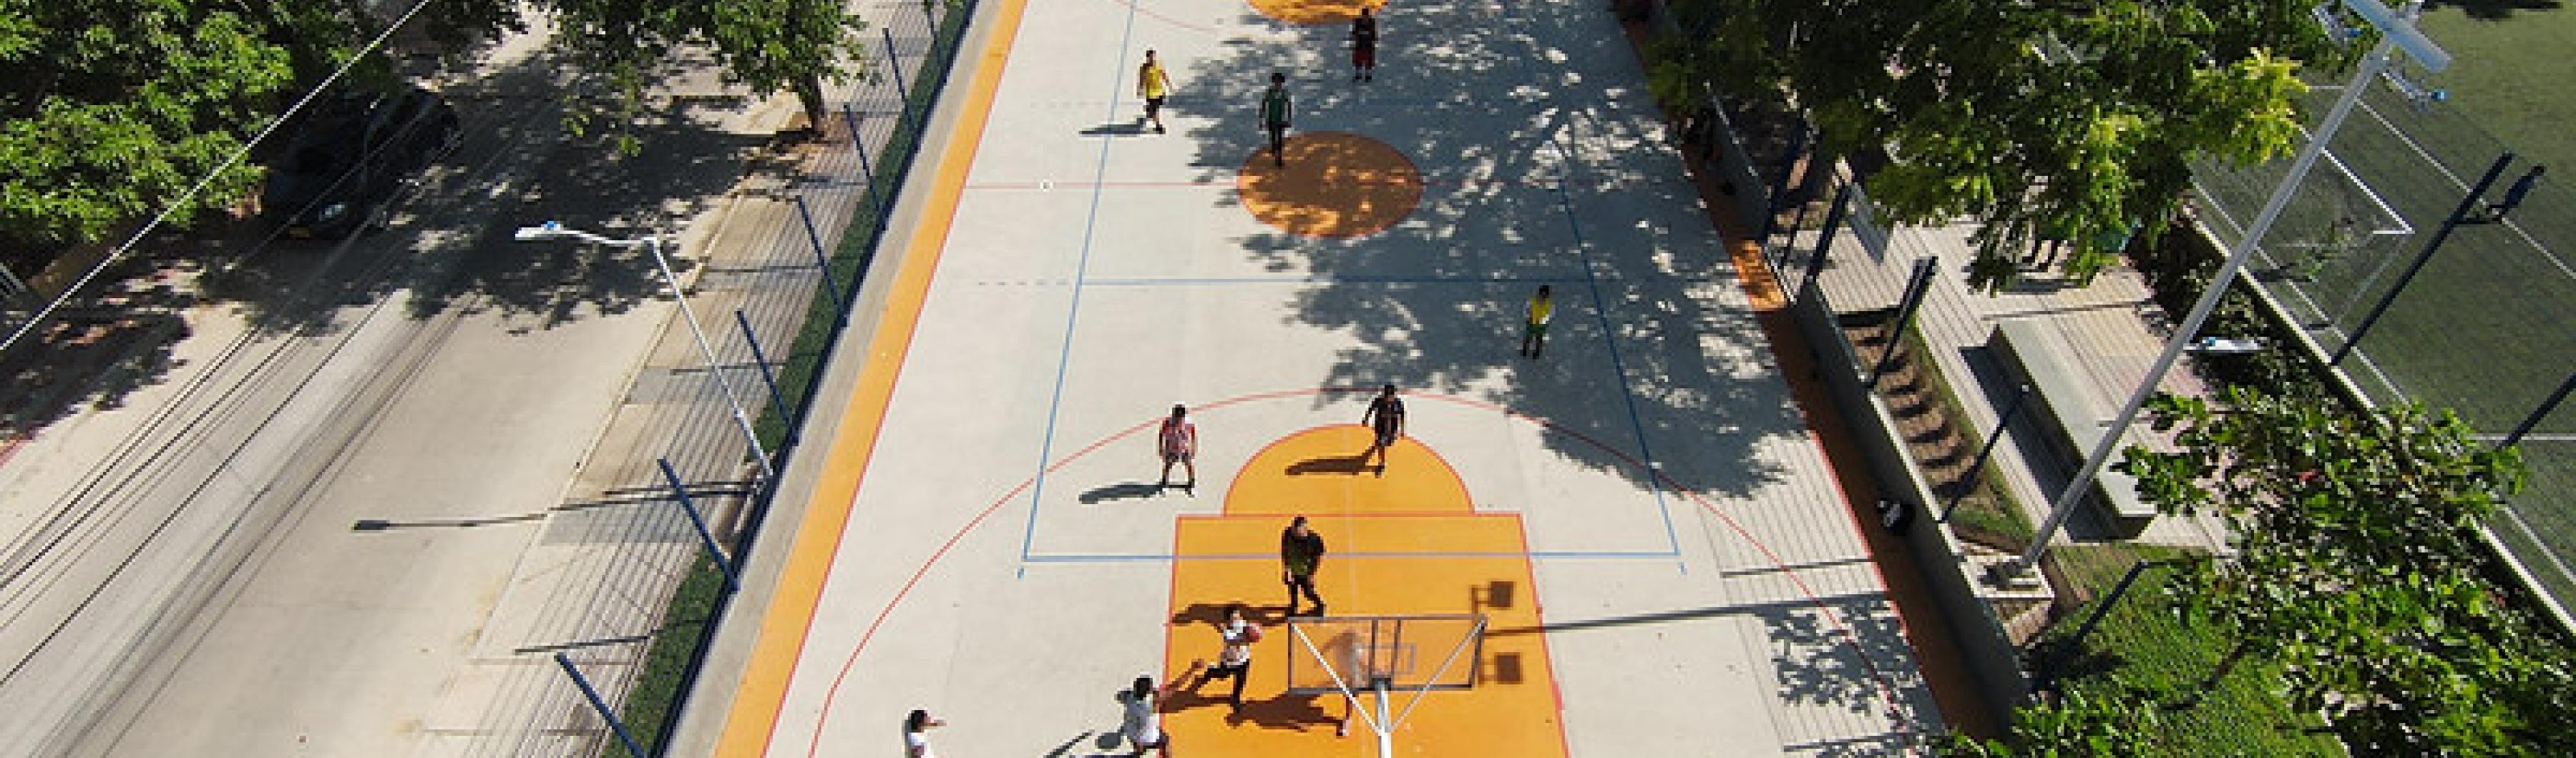 哥伦比亚巴兰基亚树木环绕的篮球场鸟瞰图